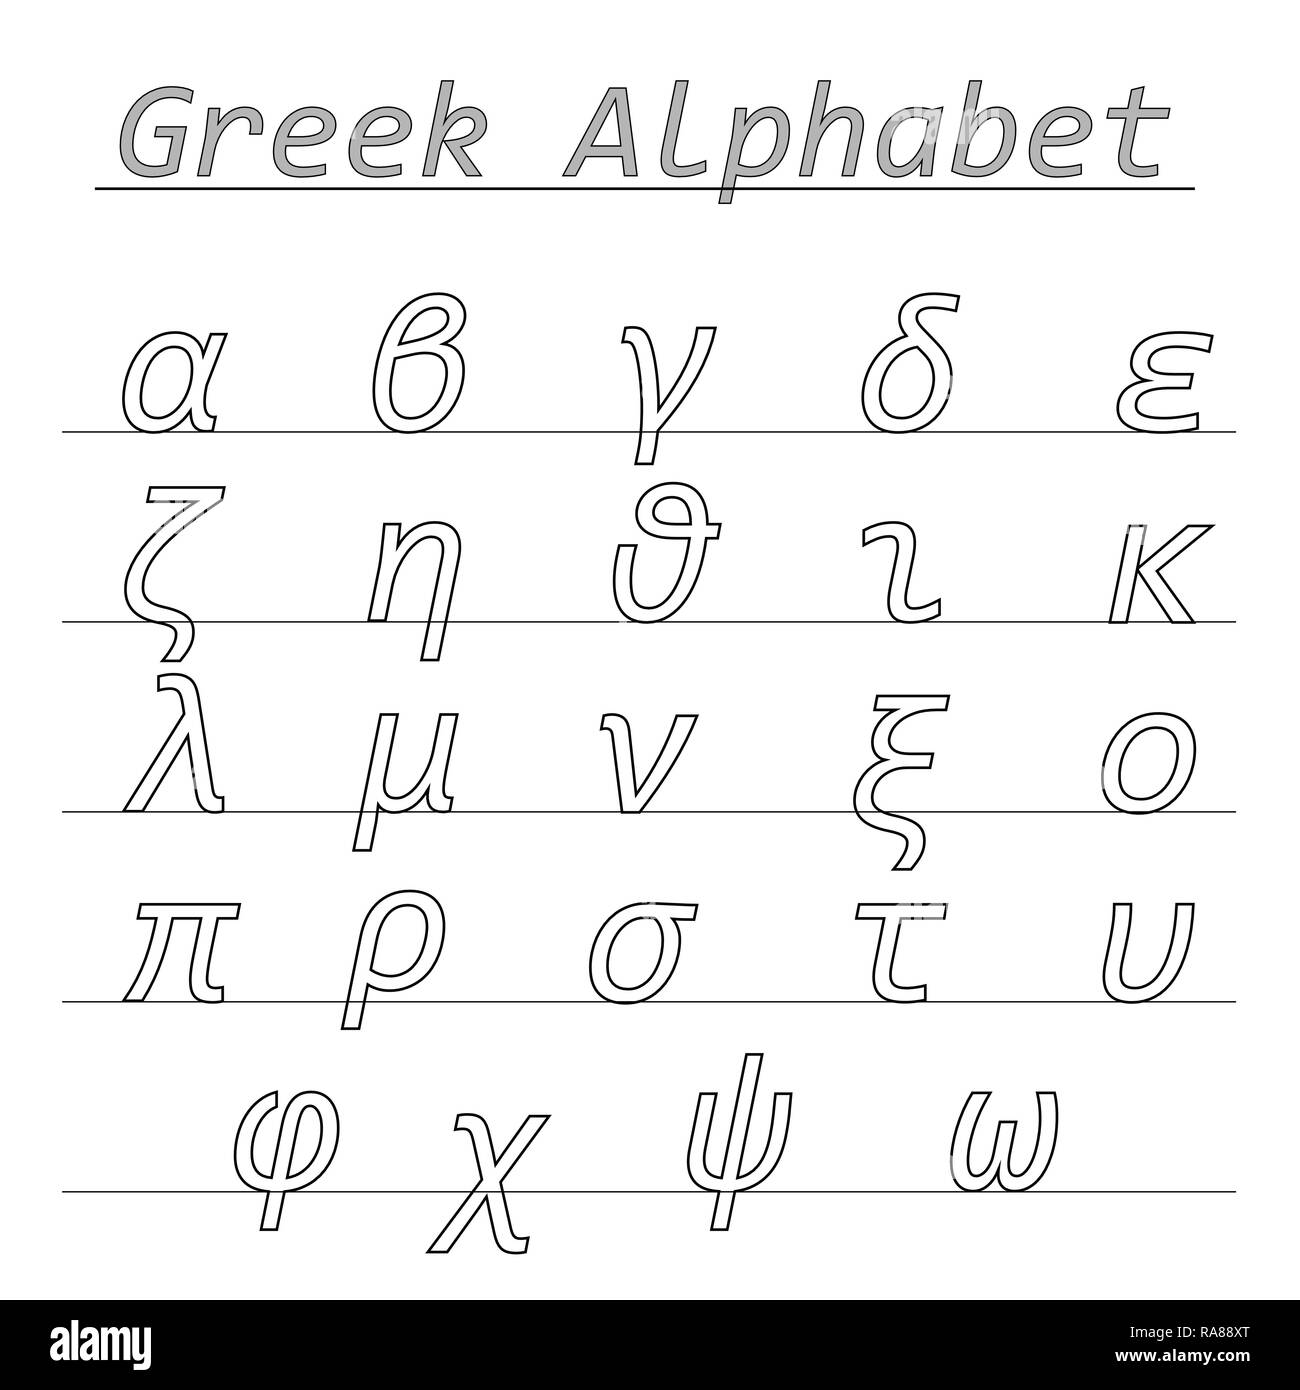 Griechische alphabet Vektor mit Kleinbuchstaben Bildung - Schule Konzept  auf weißem Hintergrund Stock-Vektorgrafik - Alamy